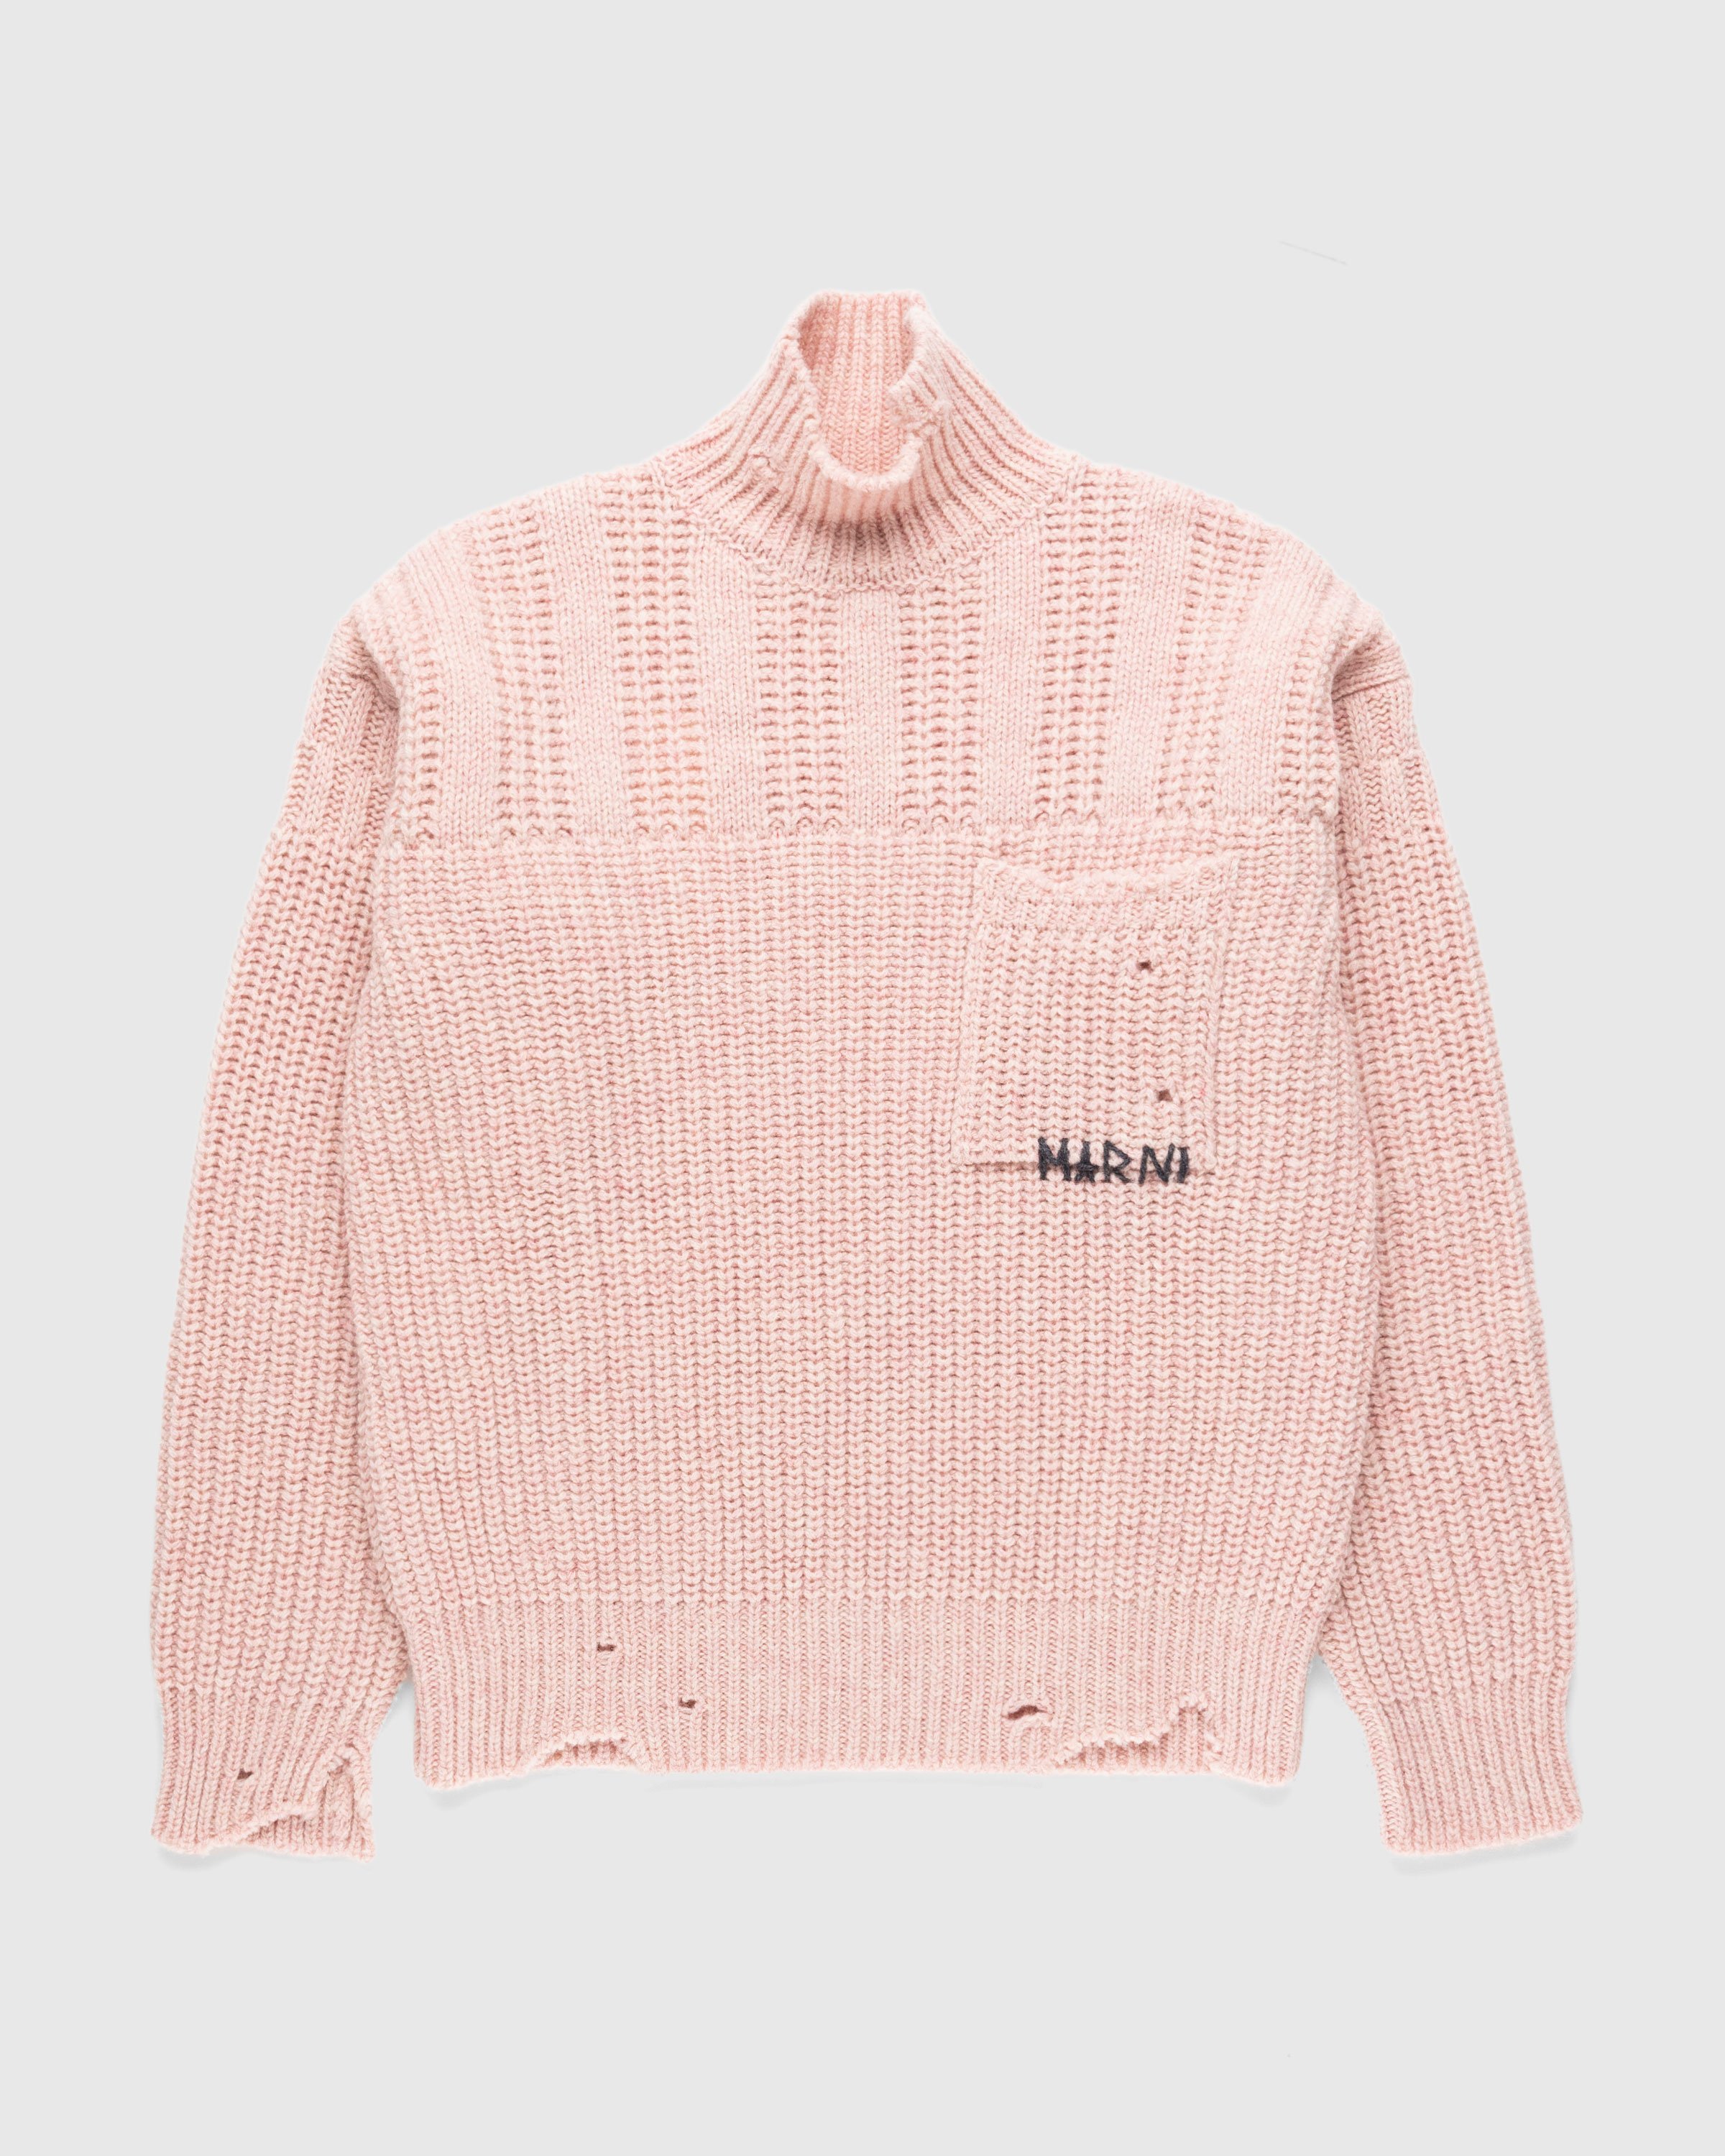 Marni - Wool Turtleneck Pink - Clothing - Pink - Image 1